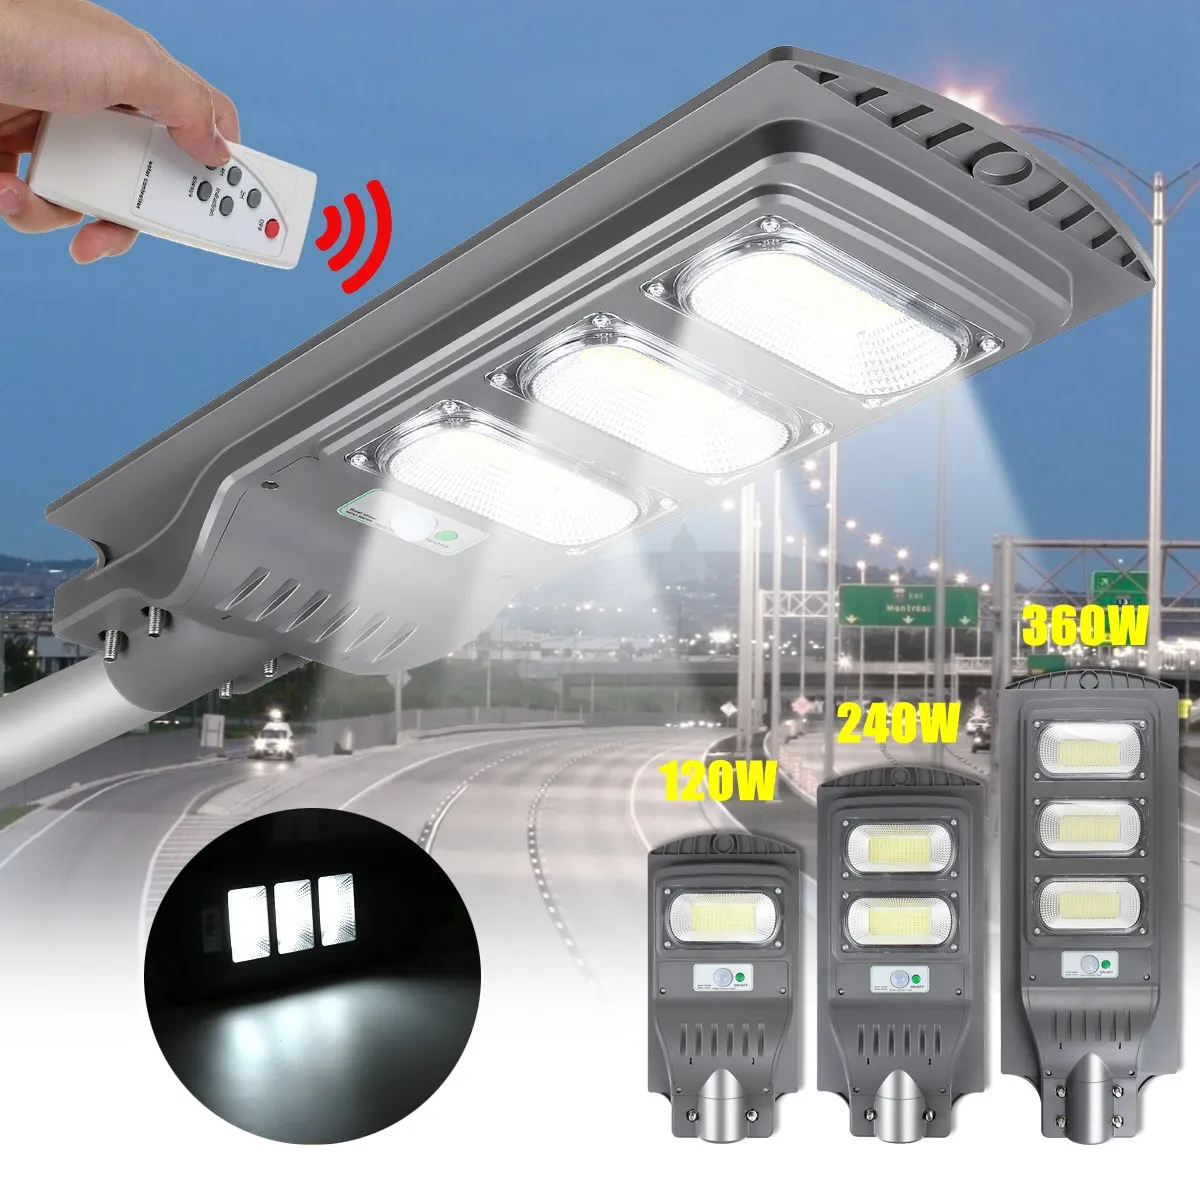 Светодиодный уличный светильник, 120 Вт, 240 Вт, 360 Вт, светодиодный наружный светильник, солнечный настенный светильник, радары, индукционный садовый светильник с дистанционным управлением